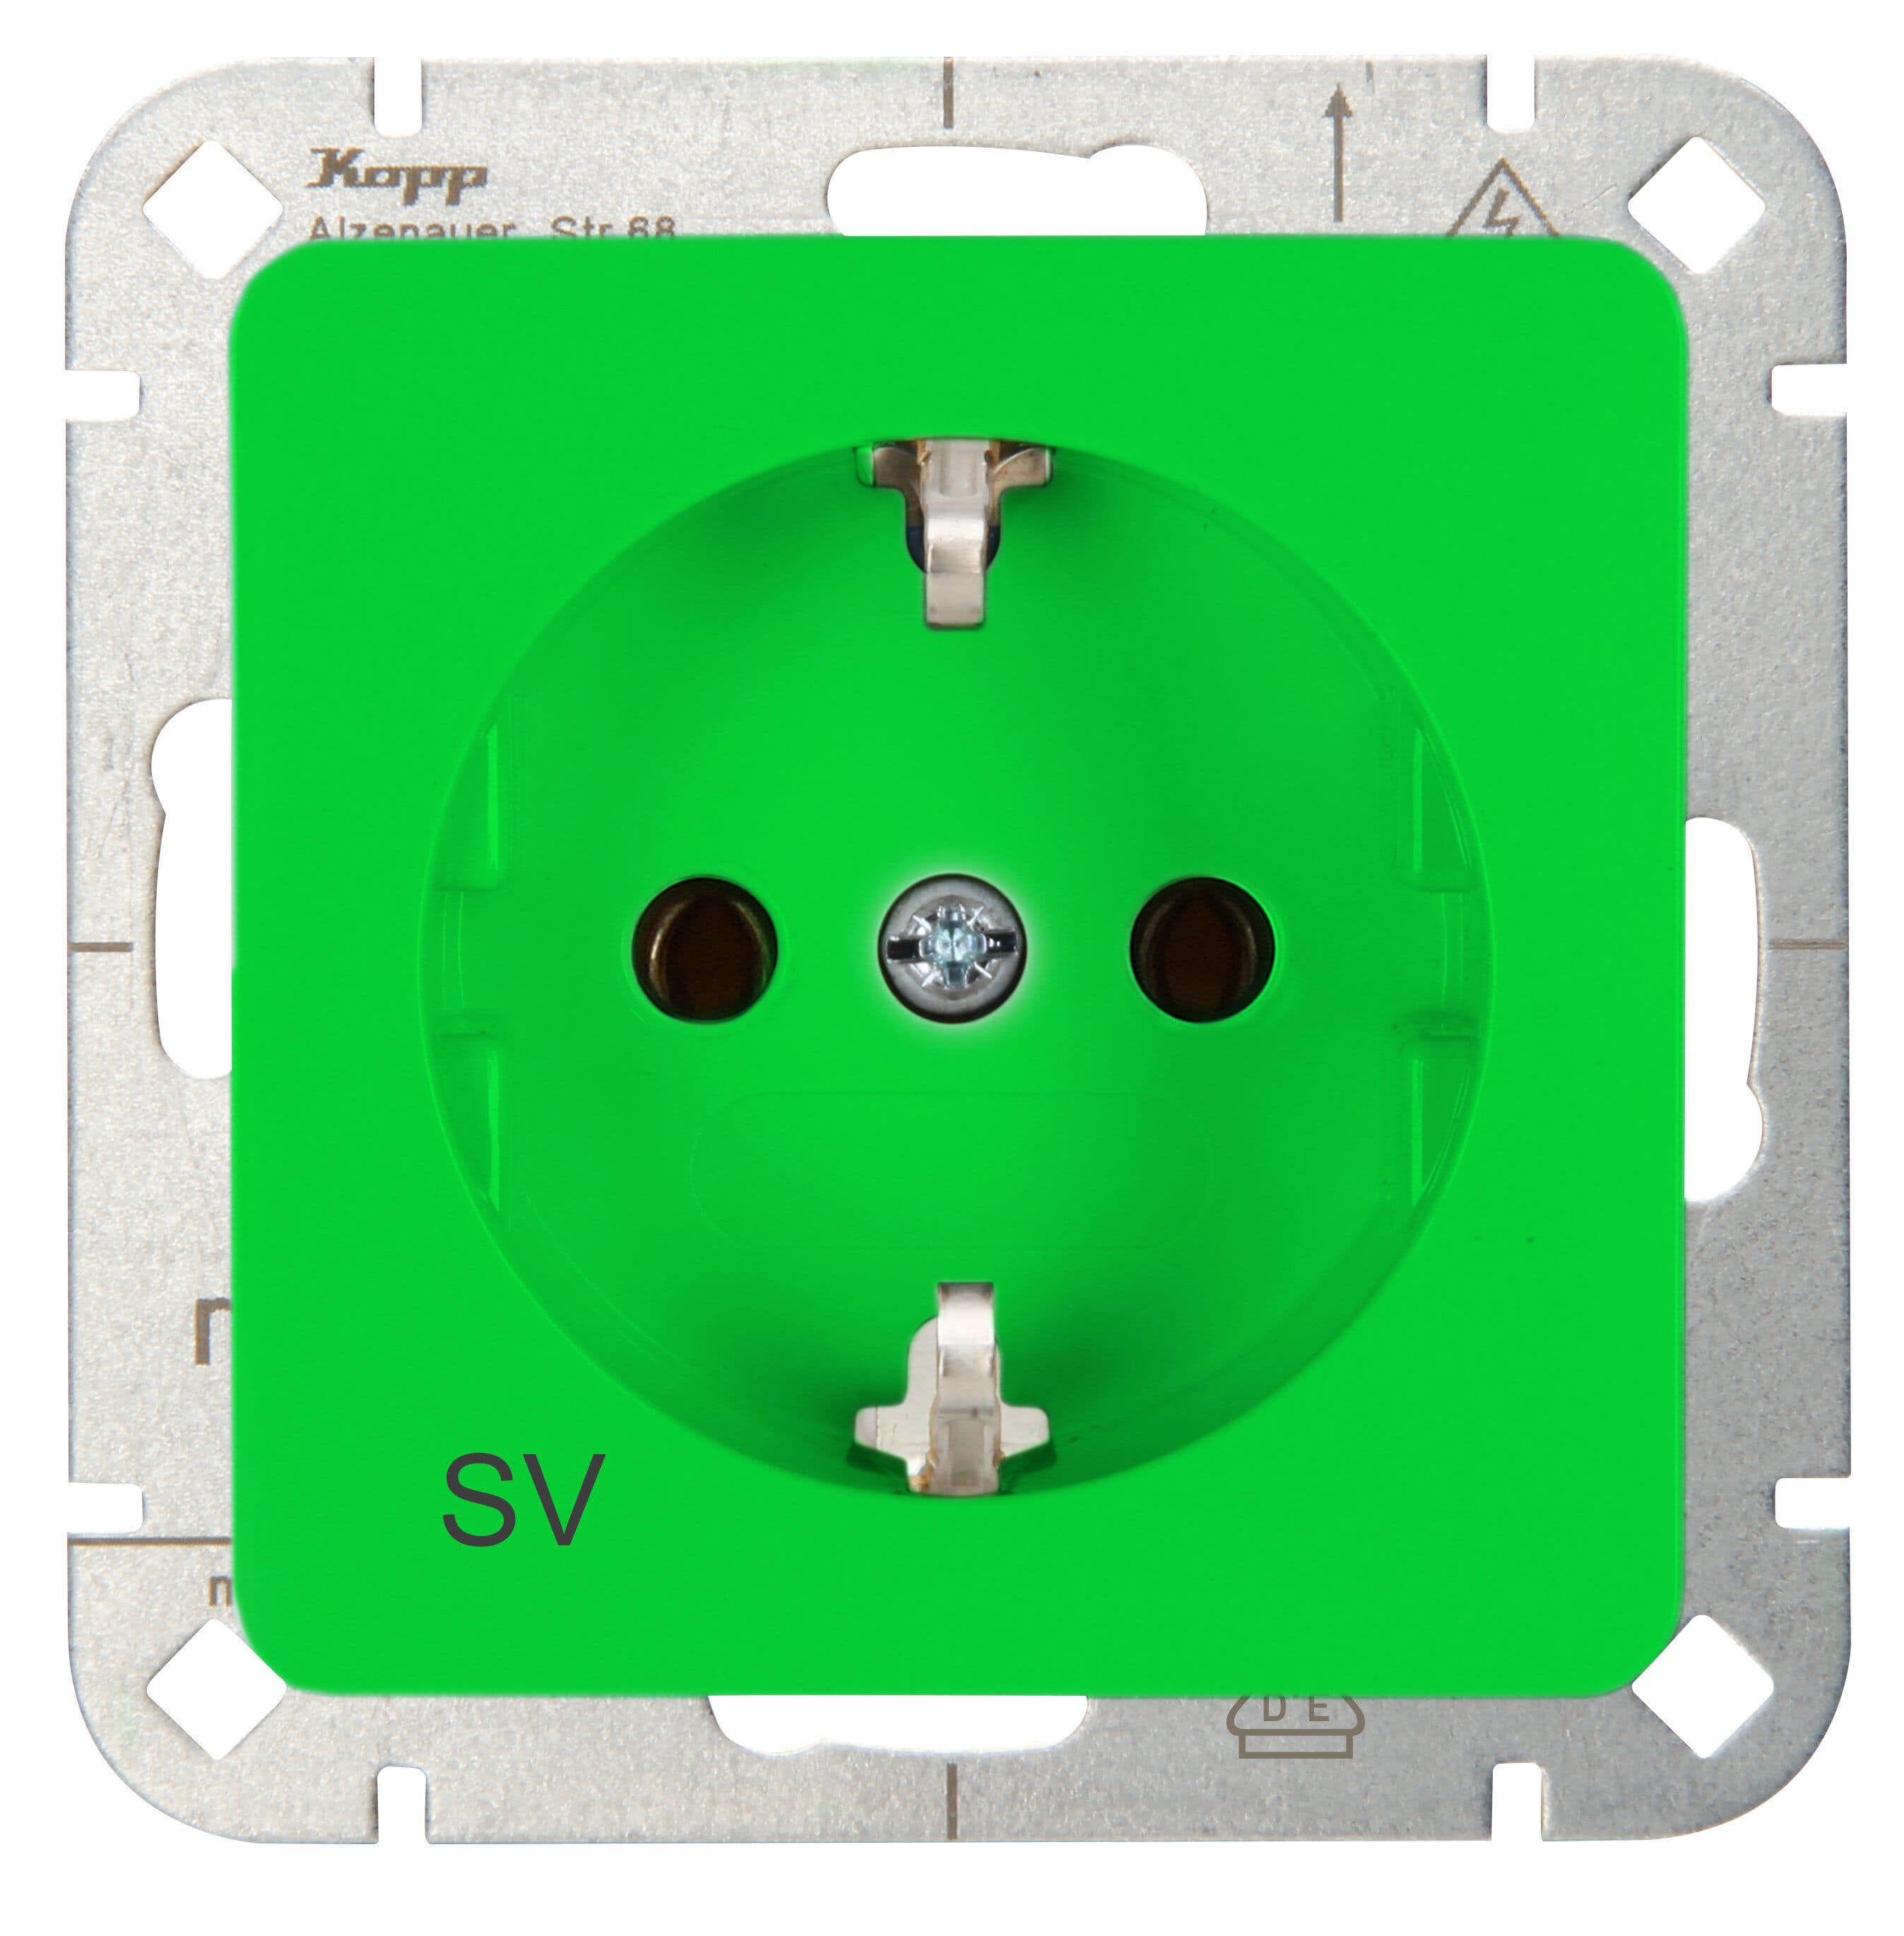 Kopp 914808001 Schutzkontakt-Steckdose mit Aufdruck "SV", grün